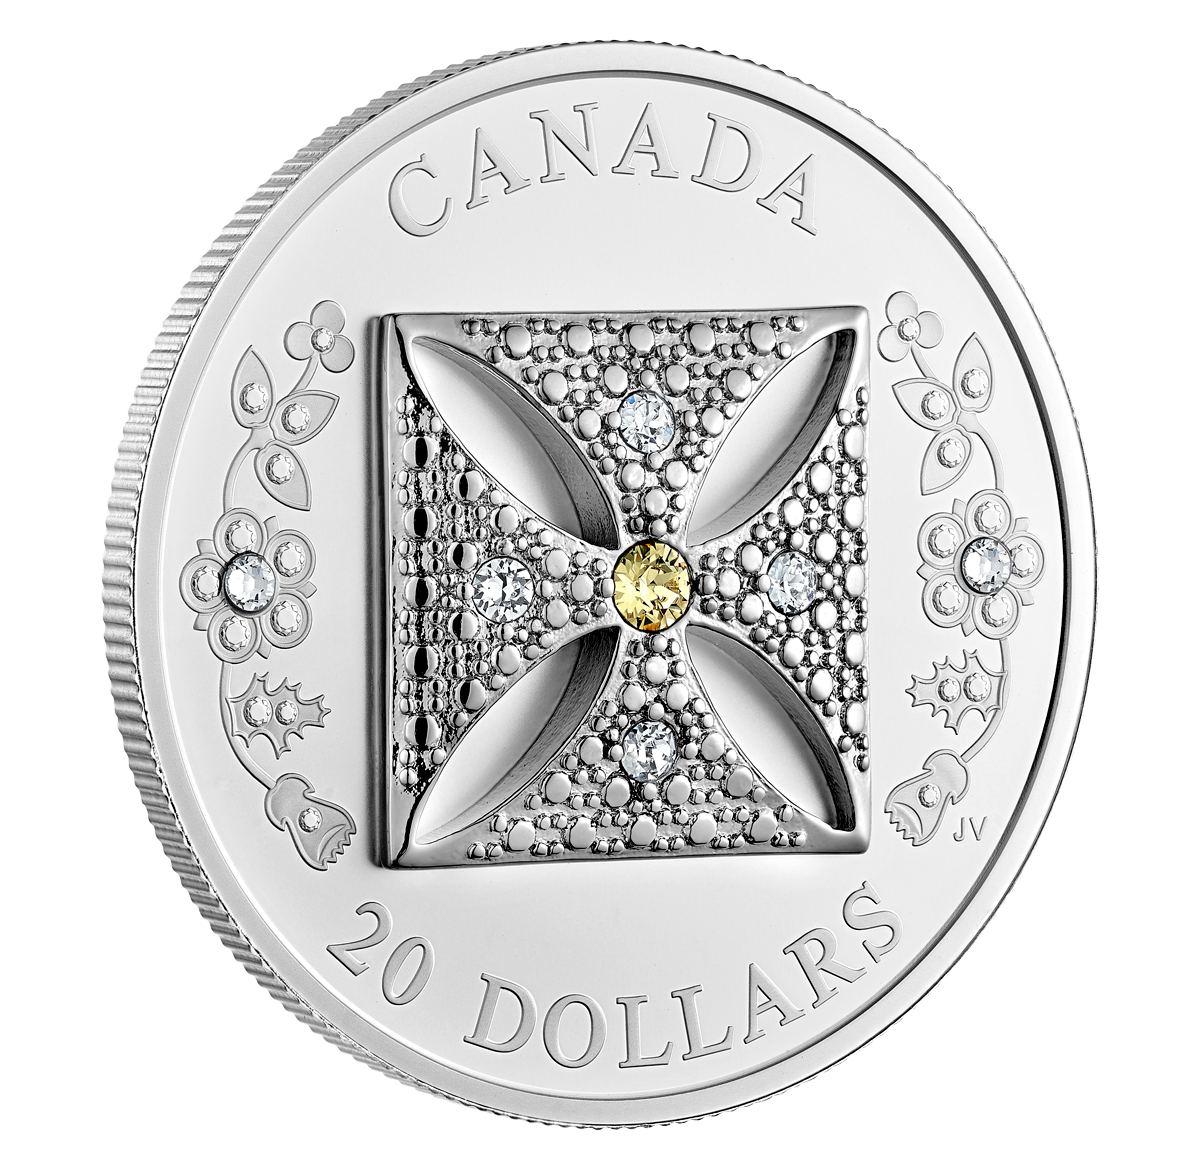 Your 2022 silver tiara coin